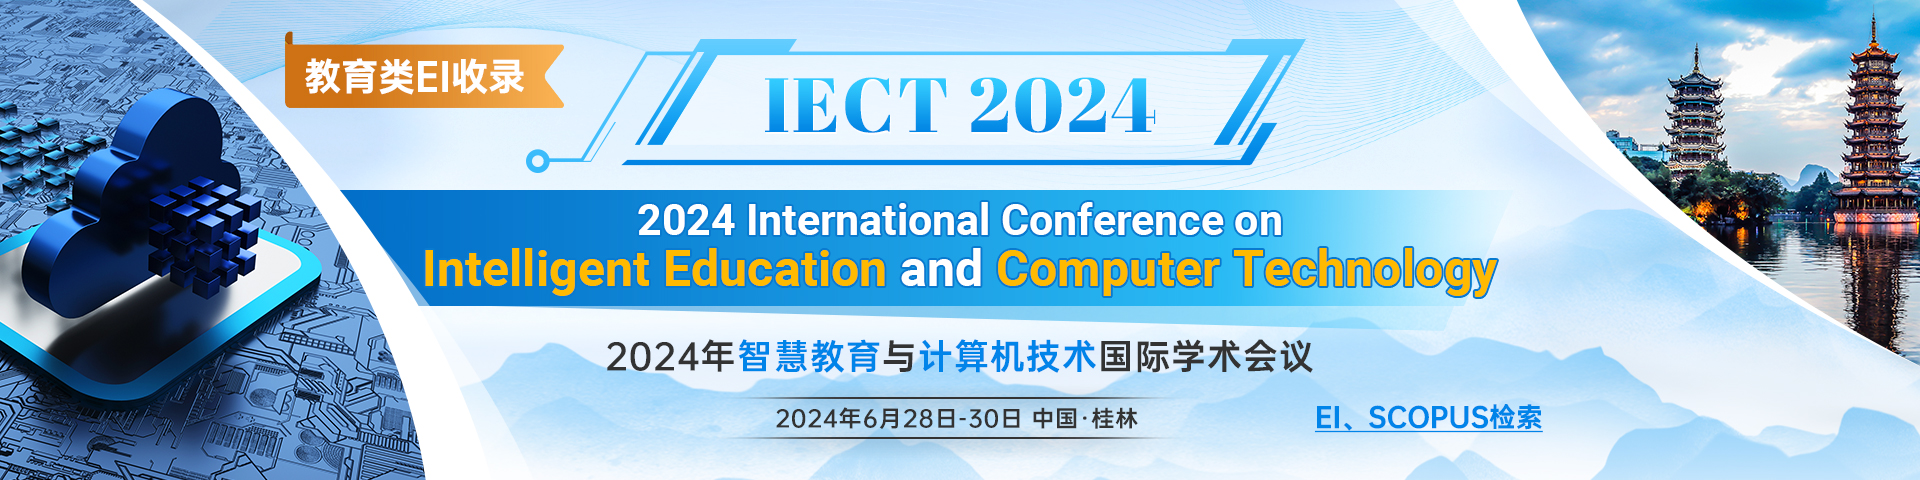 2024年智慧教育与计算机技术国际学术会议（IECT 2024）